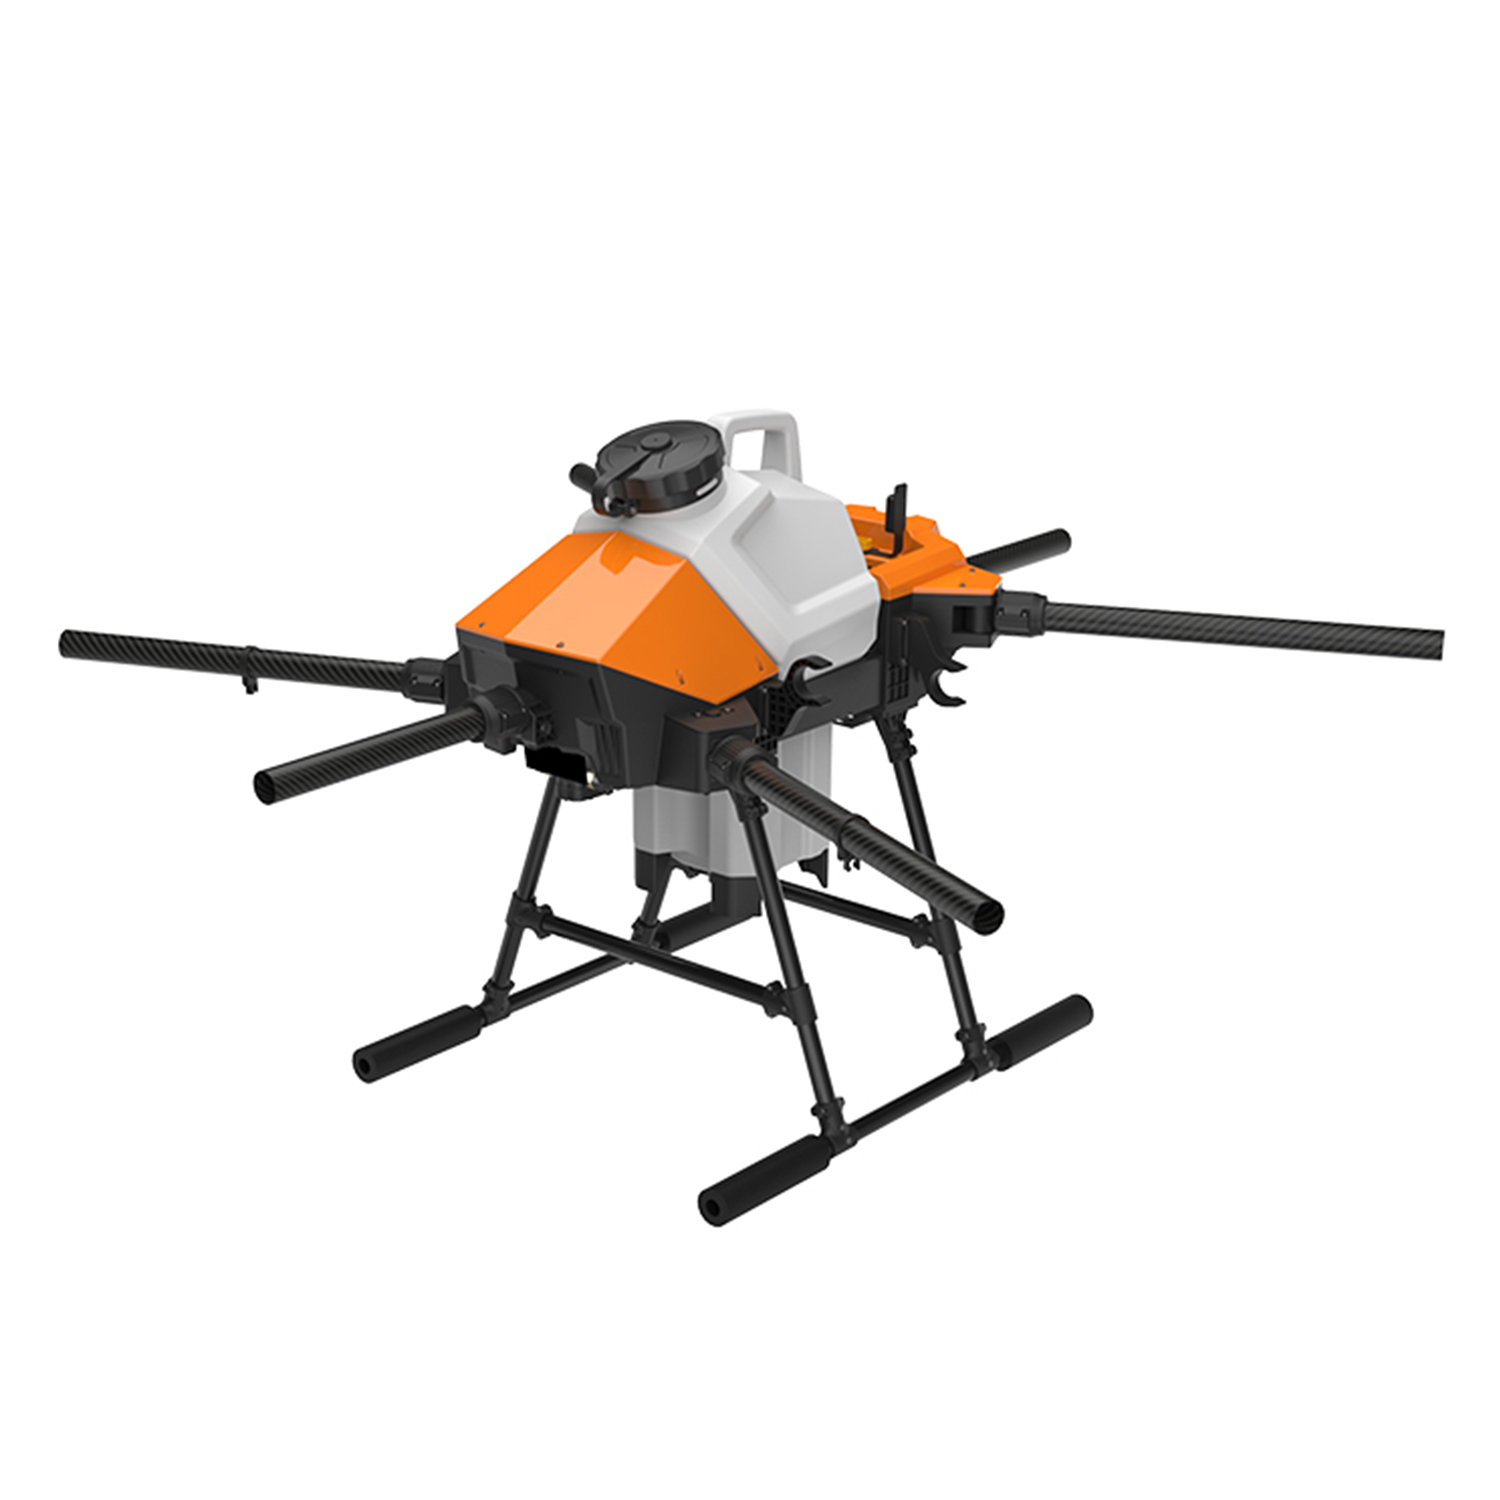 EFT G610 베이직 SET 농업 방제 드론하비윙 x6 파워시스템 탑재 헬셀